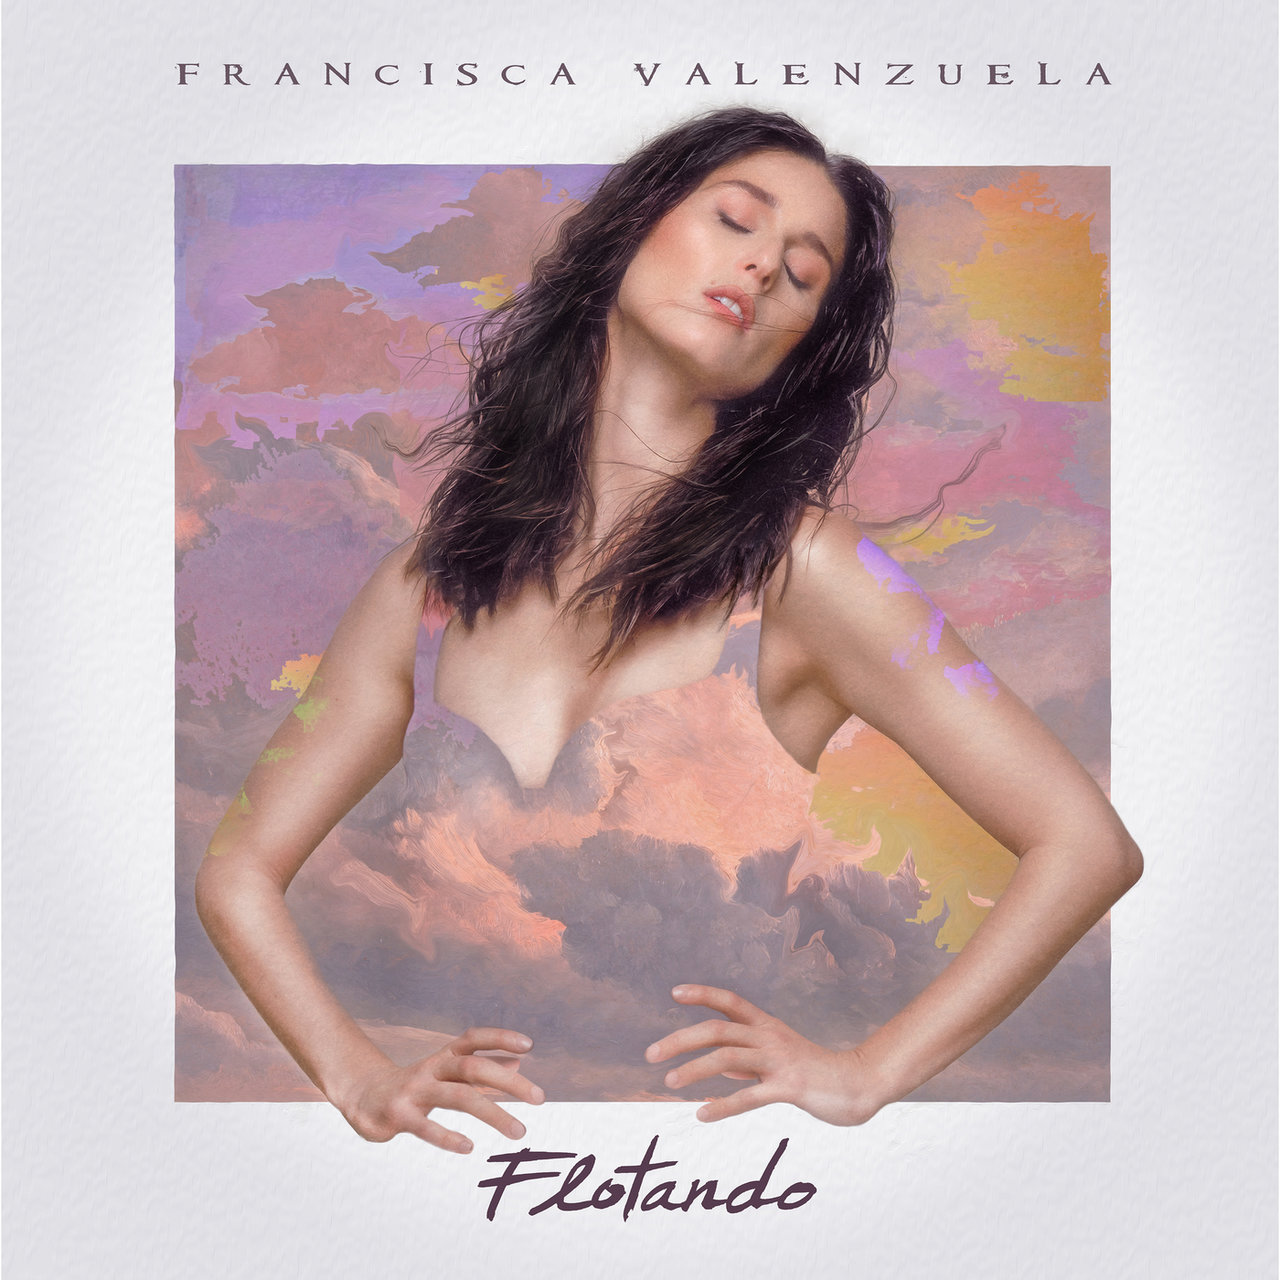 Francisca Valenzuela Flotando cover artwork